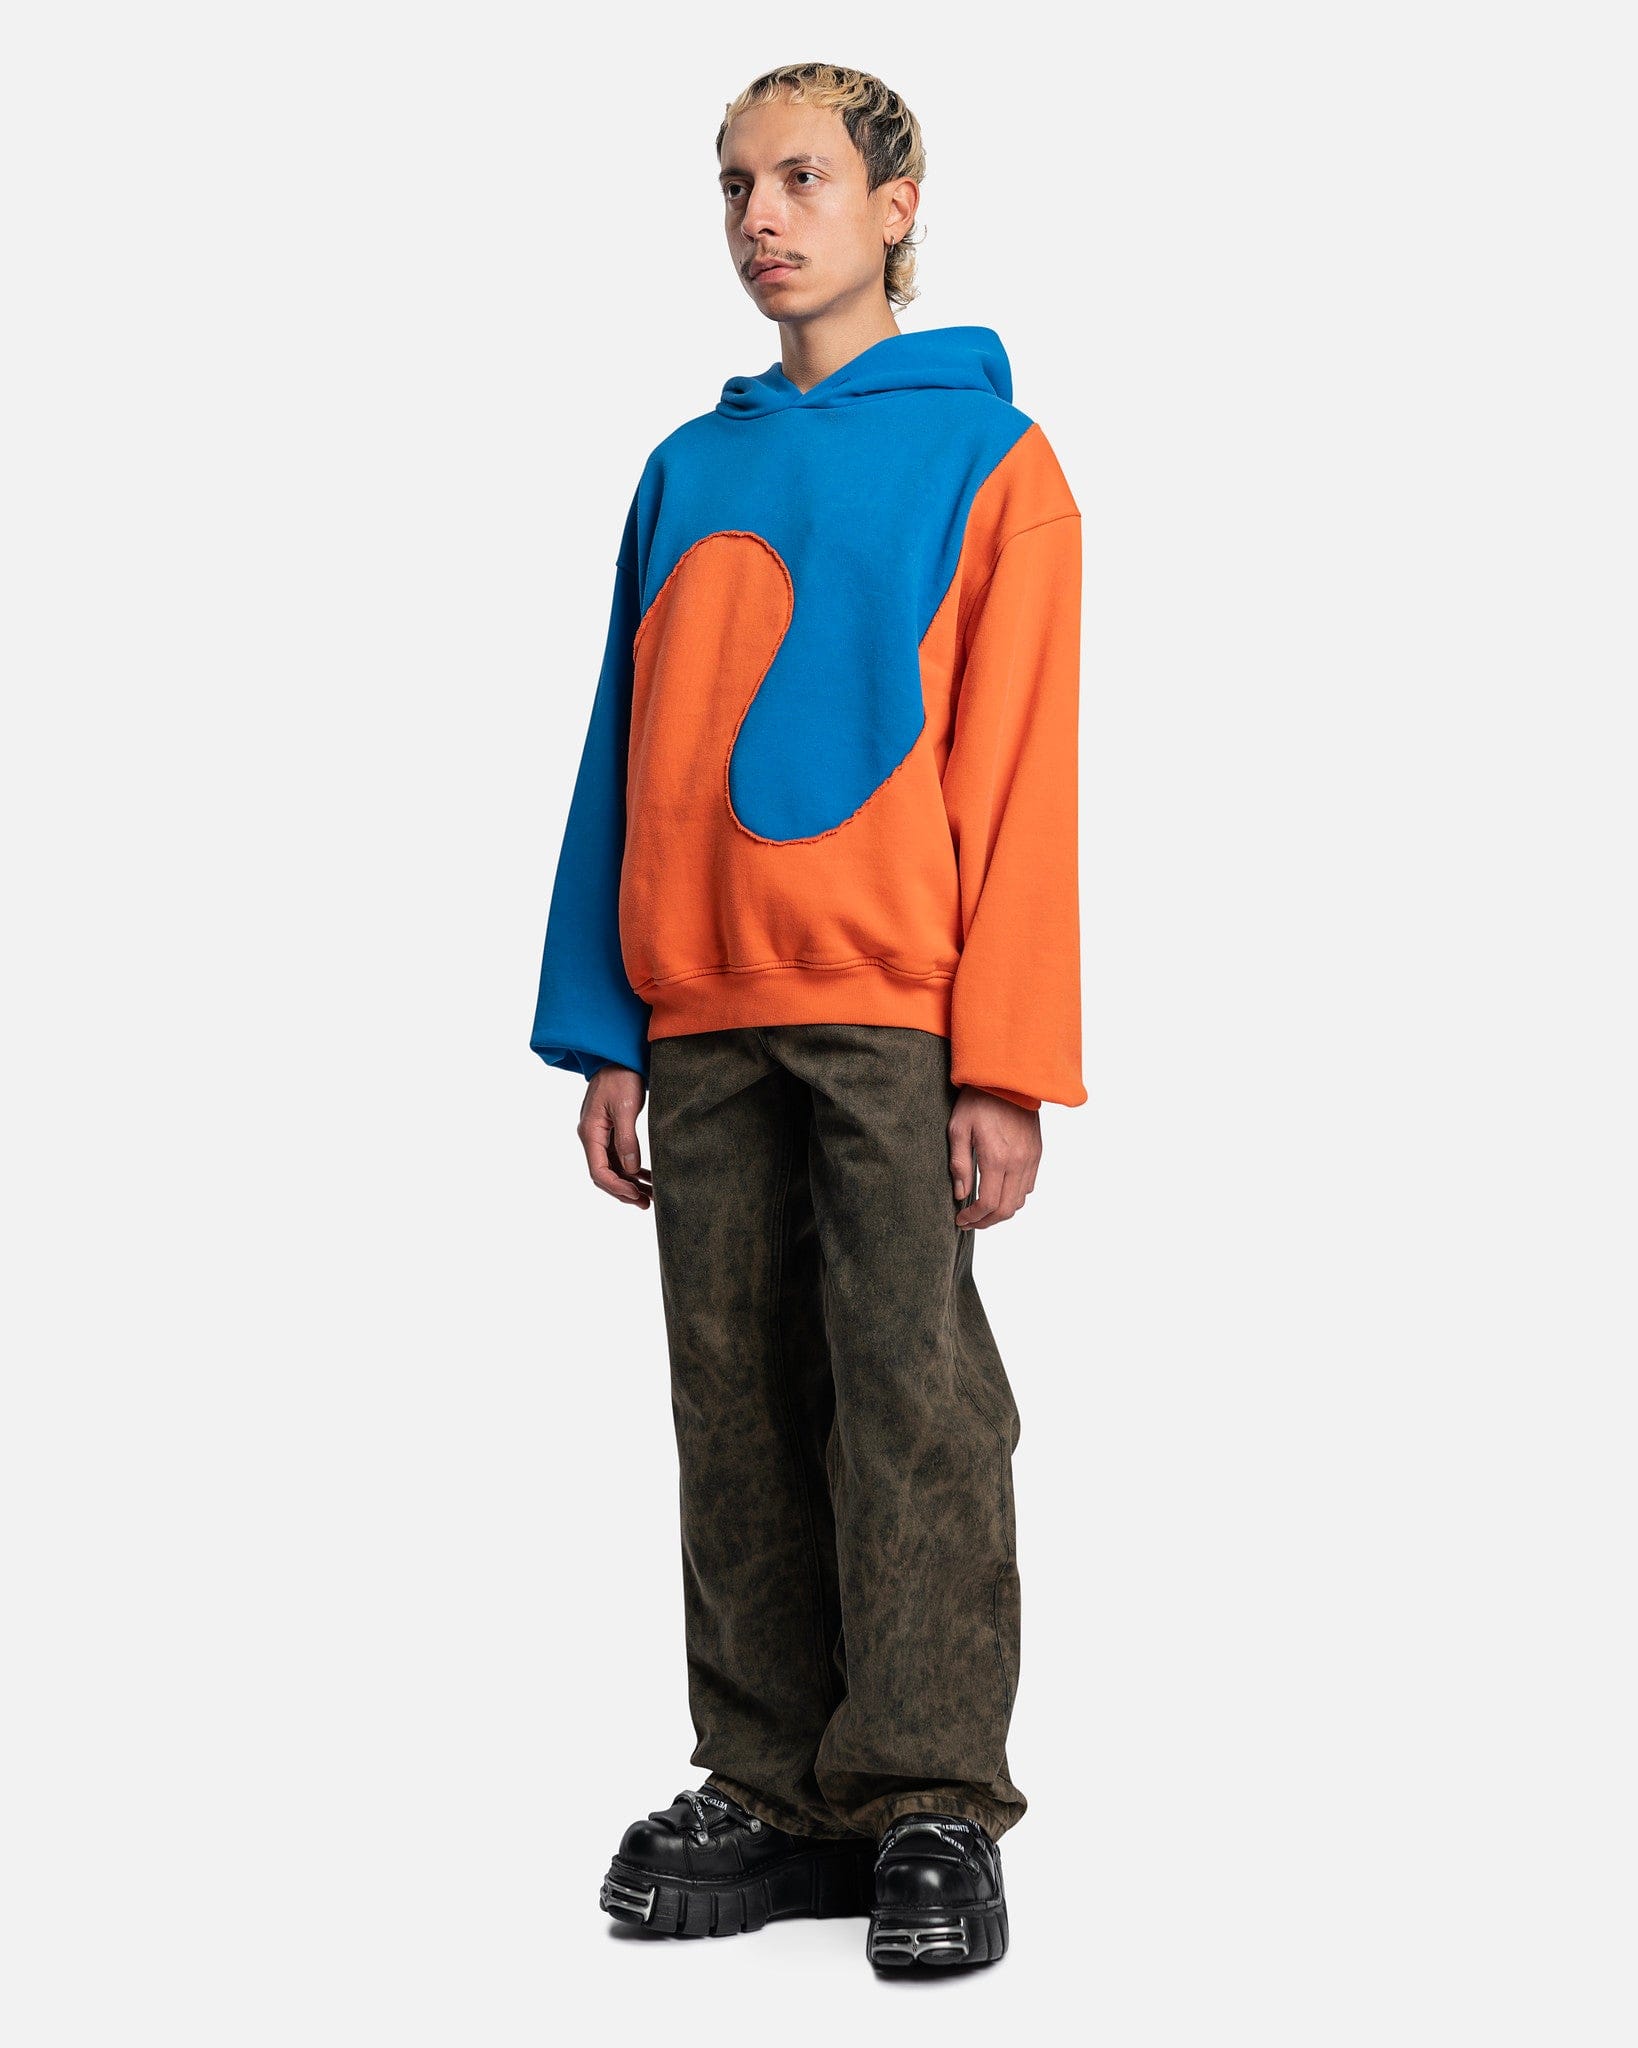 ERL Men's Sweatshirts Unisex Swirl Fleece Hoodie Jersey in Blue/Orange